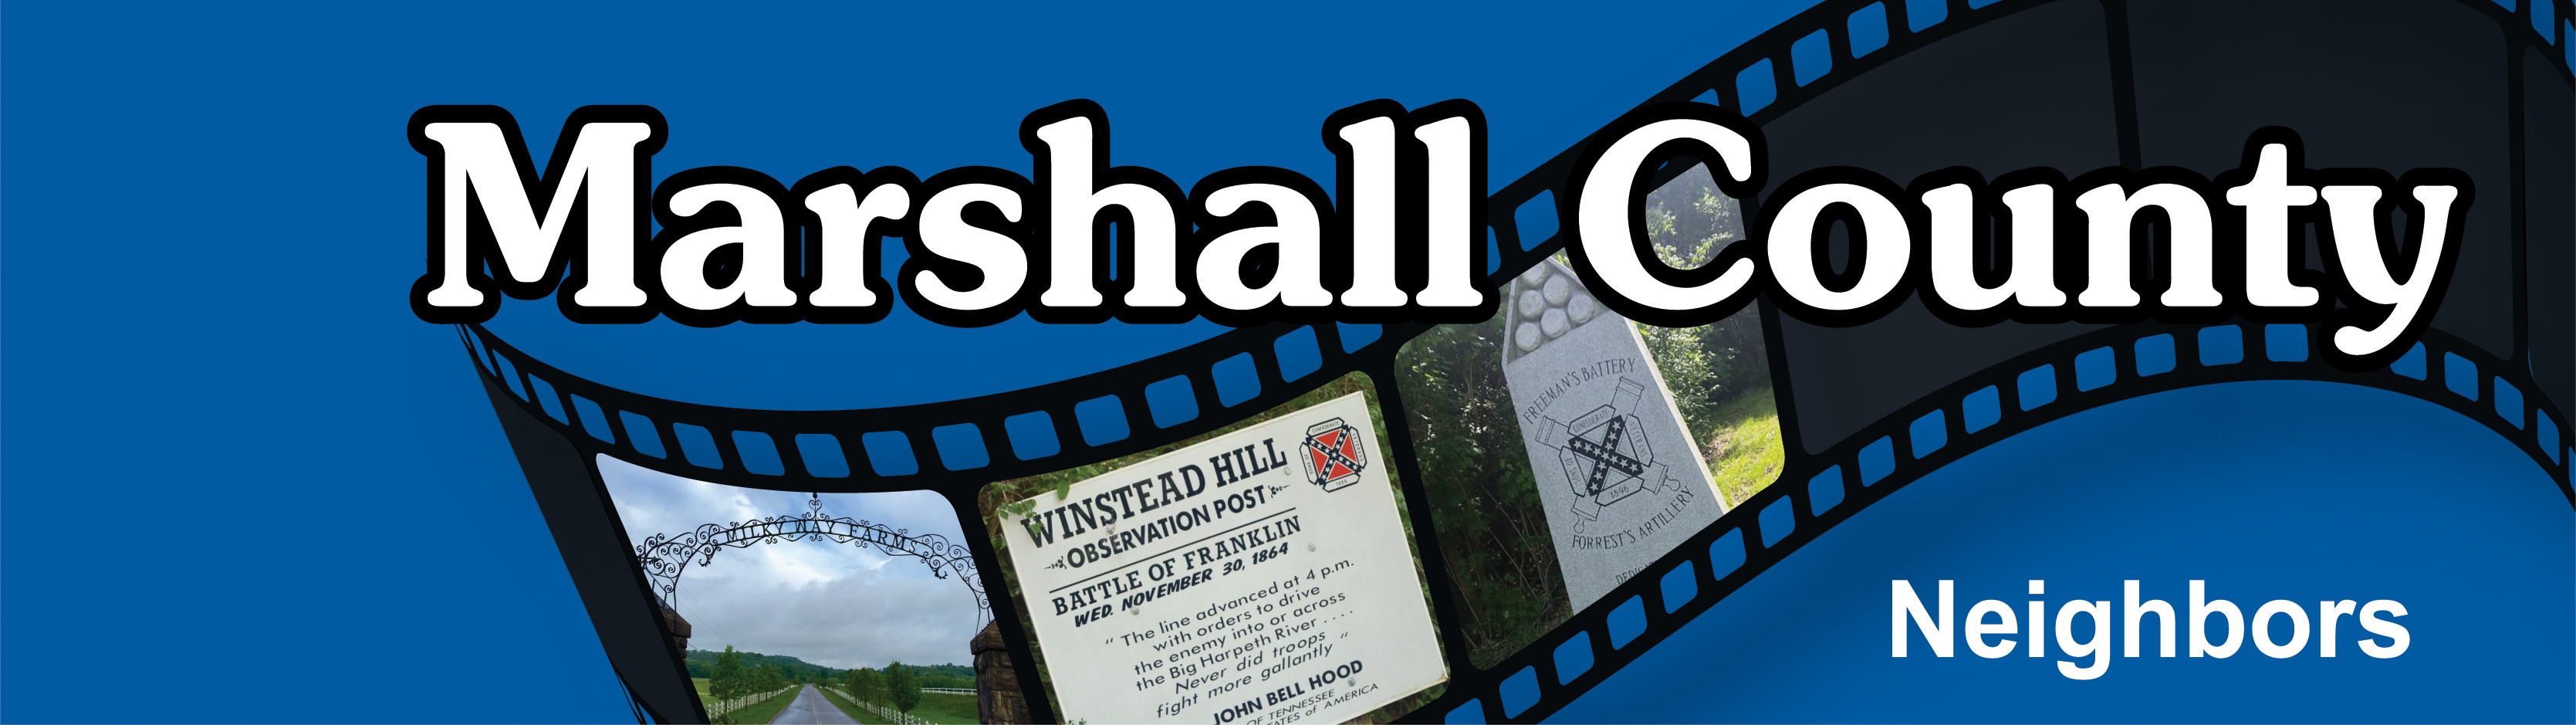 marshall county header